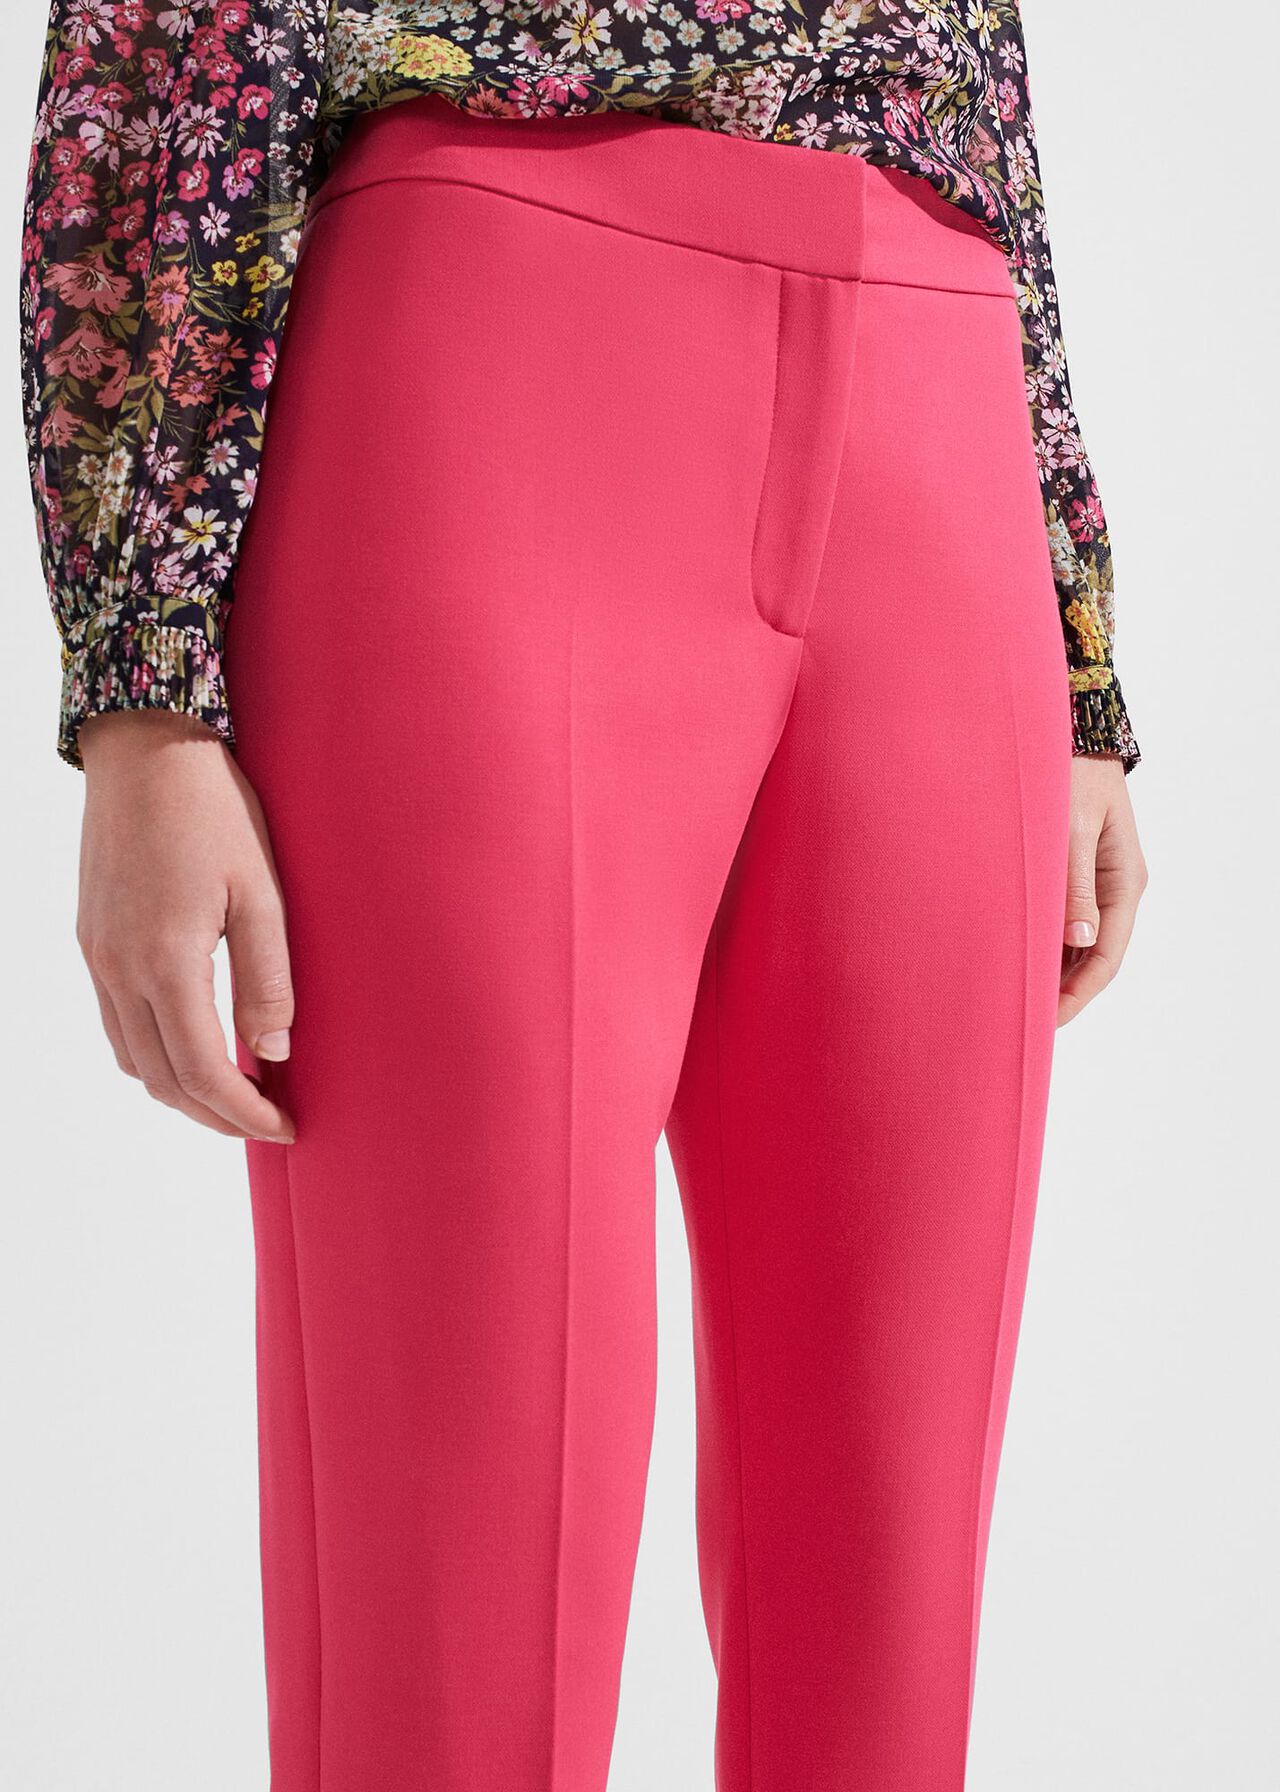 Kaia Slim Pants, Geranium Pink, hi-res